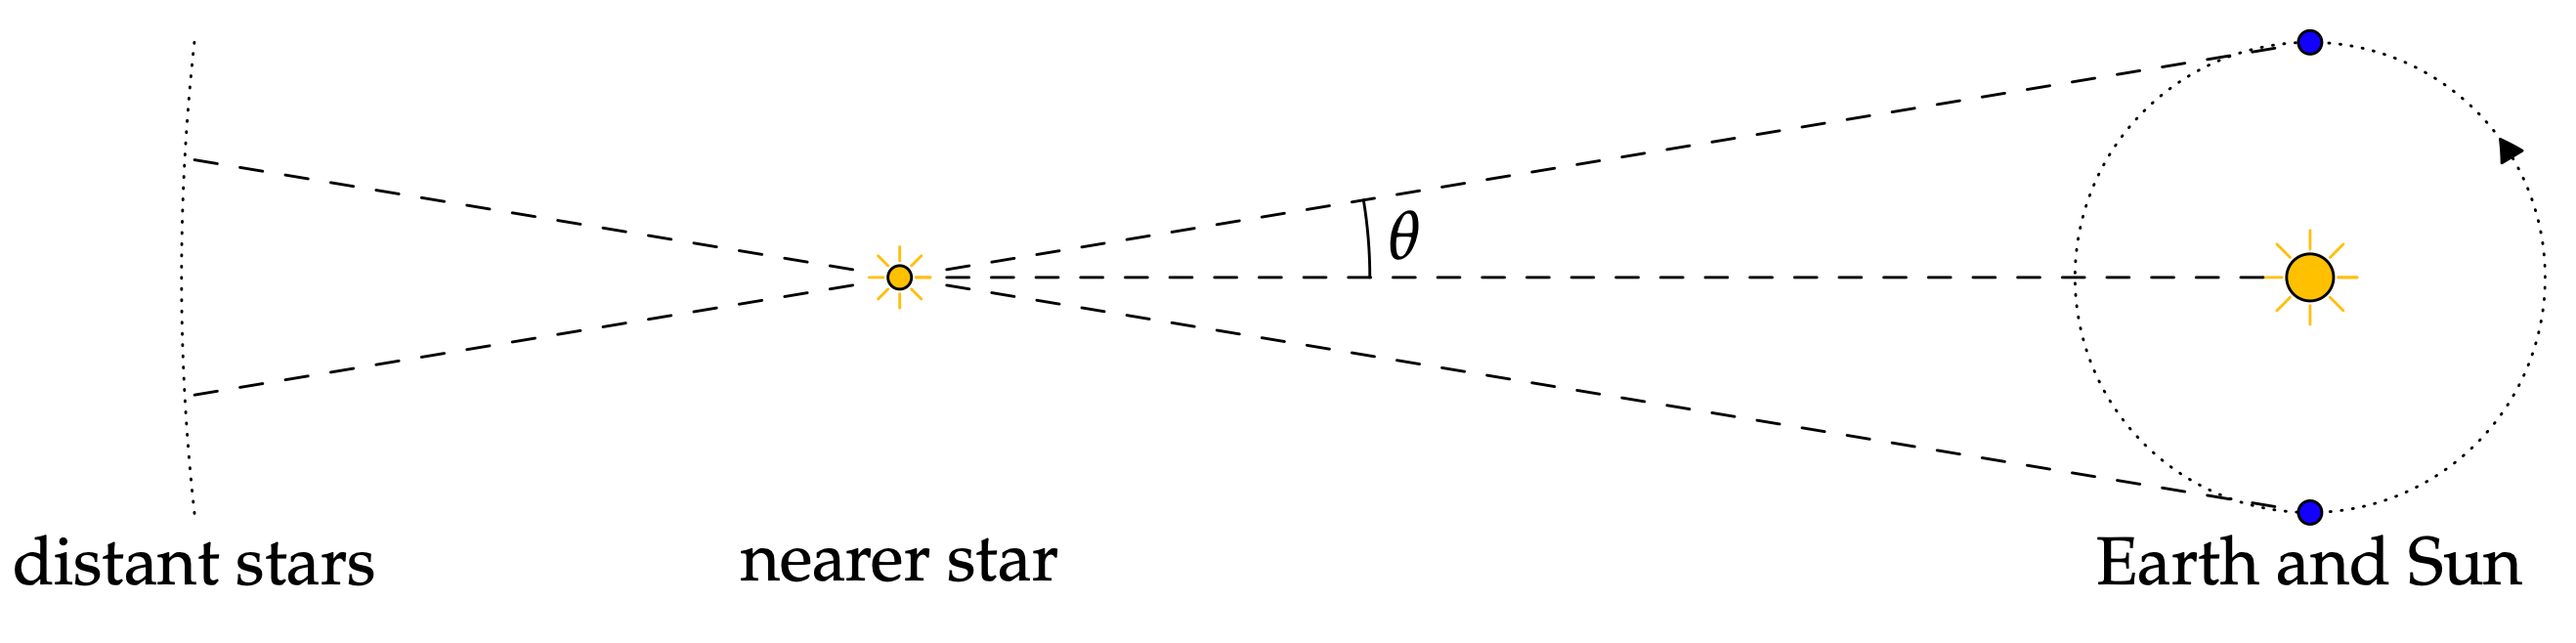 exemplo de astronomia - imagem por www.math.uci.edu